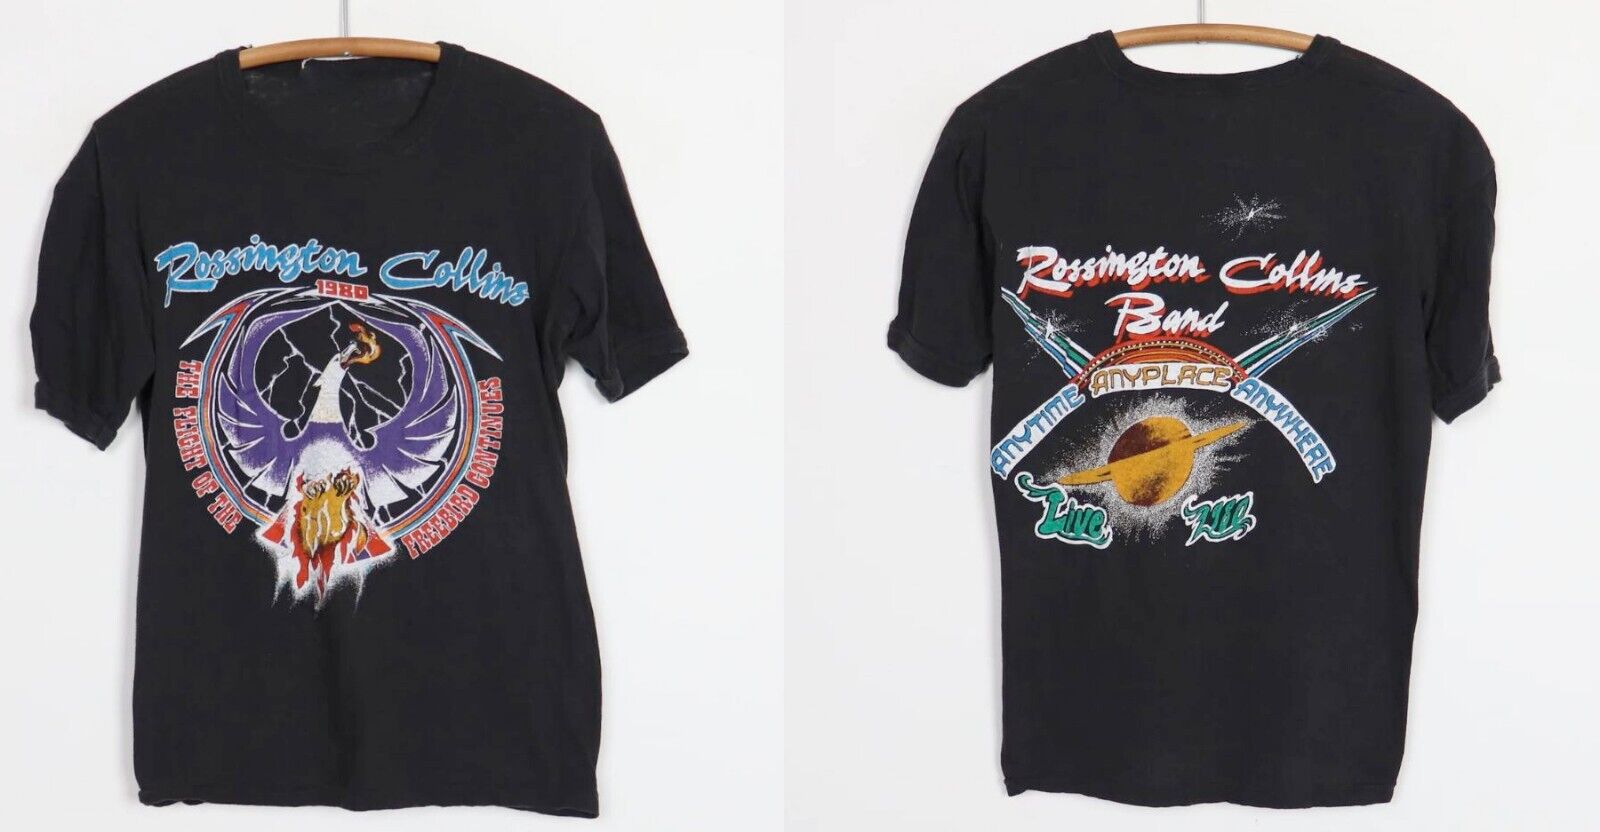 Vintage 1980 Rossington Collins Band Concert-Double Side-shirt,Reprint Shirt